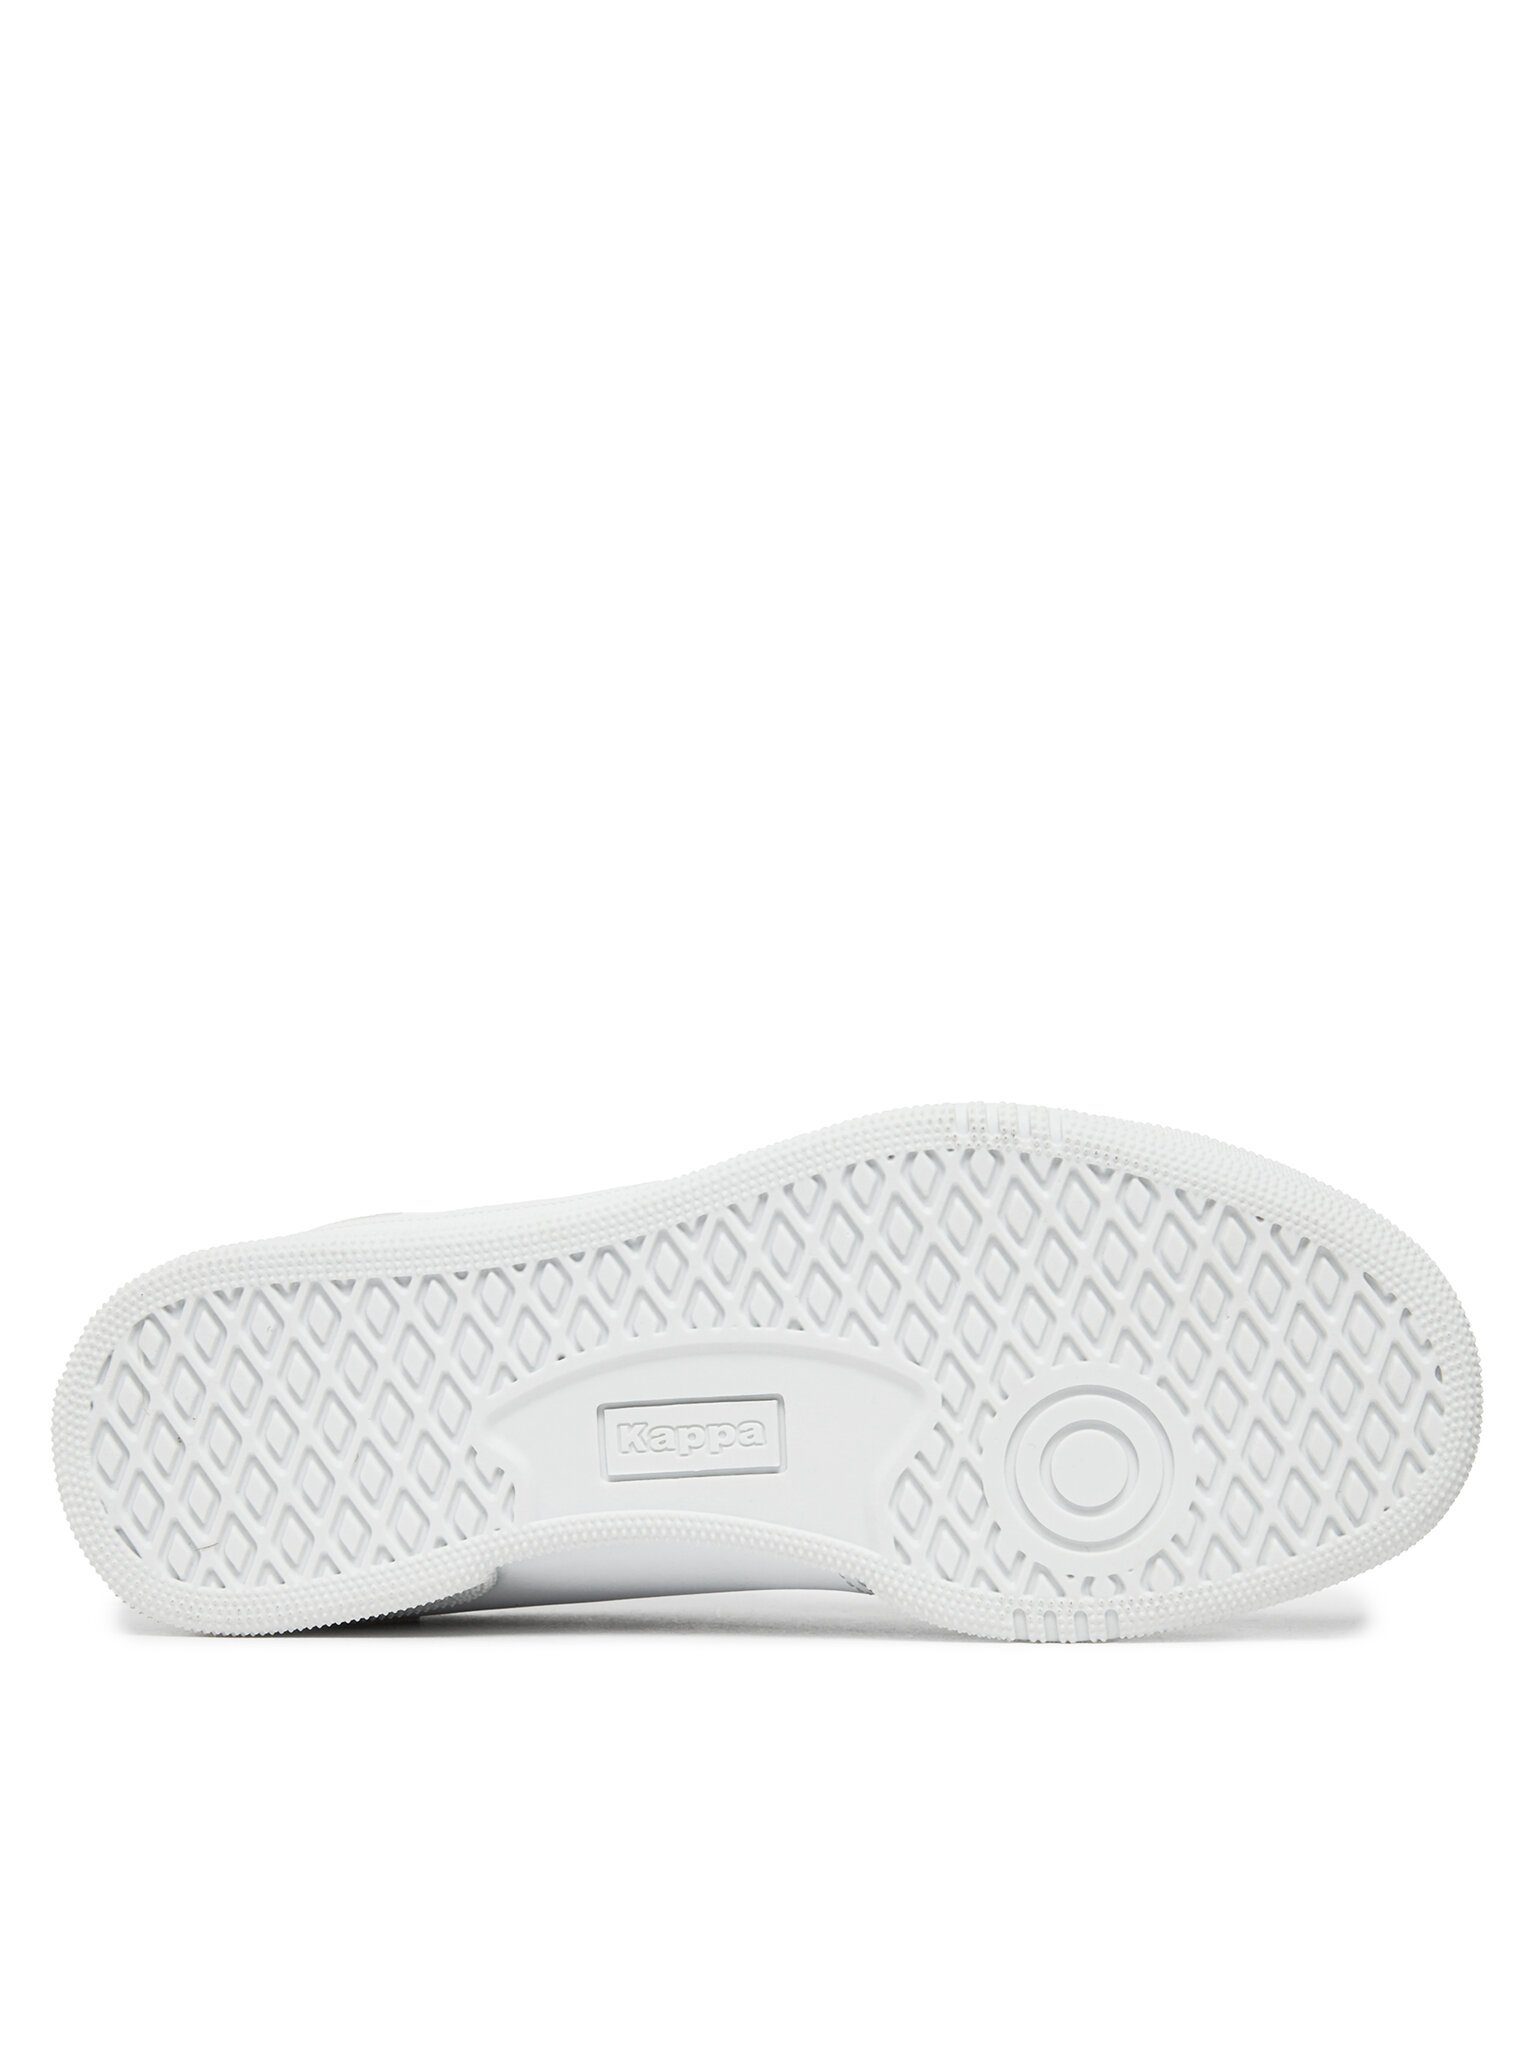 Kappa Sneakers 331C1GW White/Iridescent A1J Sneaker